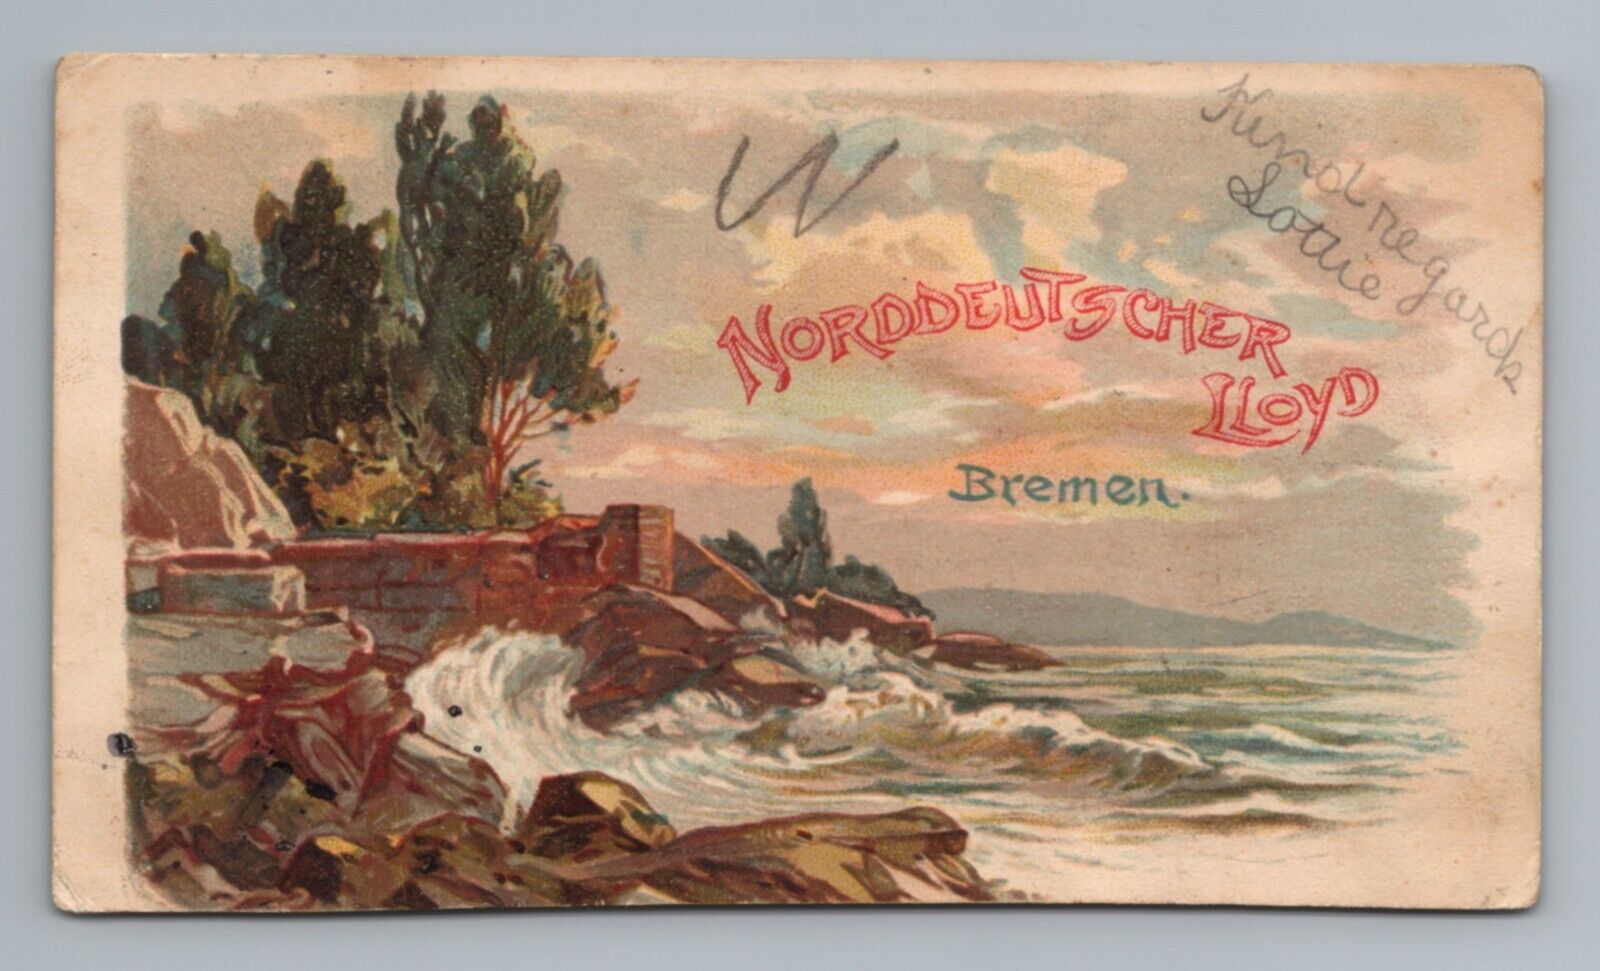 Norddeutscher Lloyd Bremen Postcard